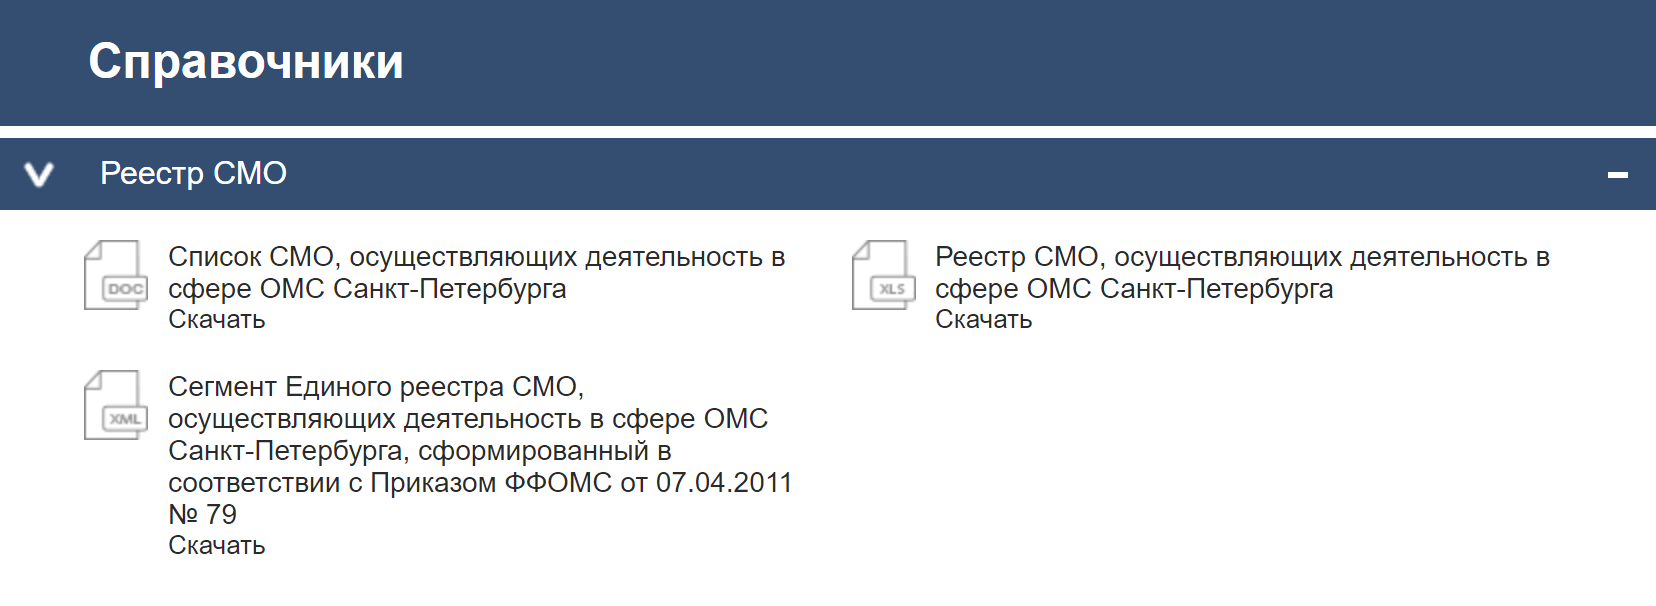 На сайте питерского ФОМС поиска нет. Перечень клиник нужно скачать, он будет в формате эксель-таблицы. Источник: spboms.ru